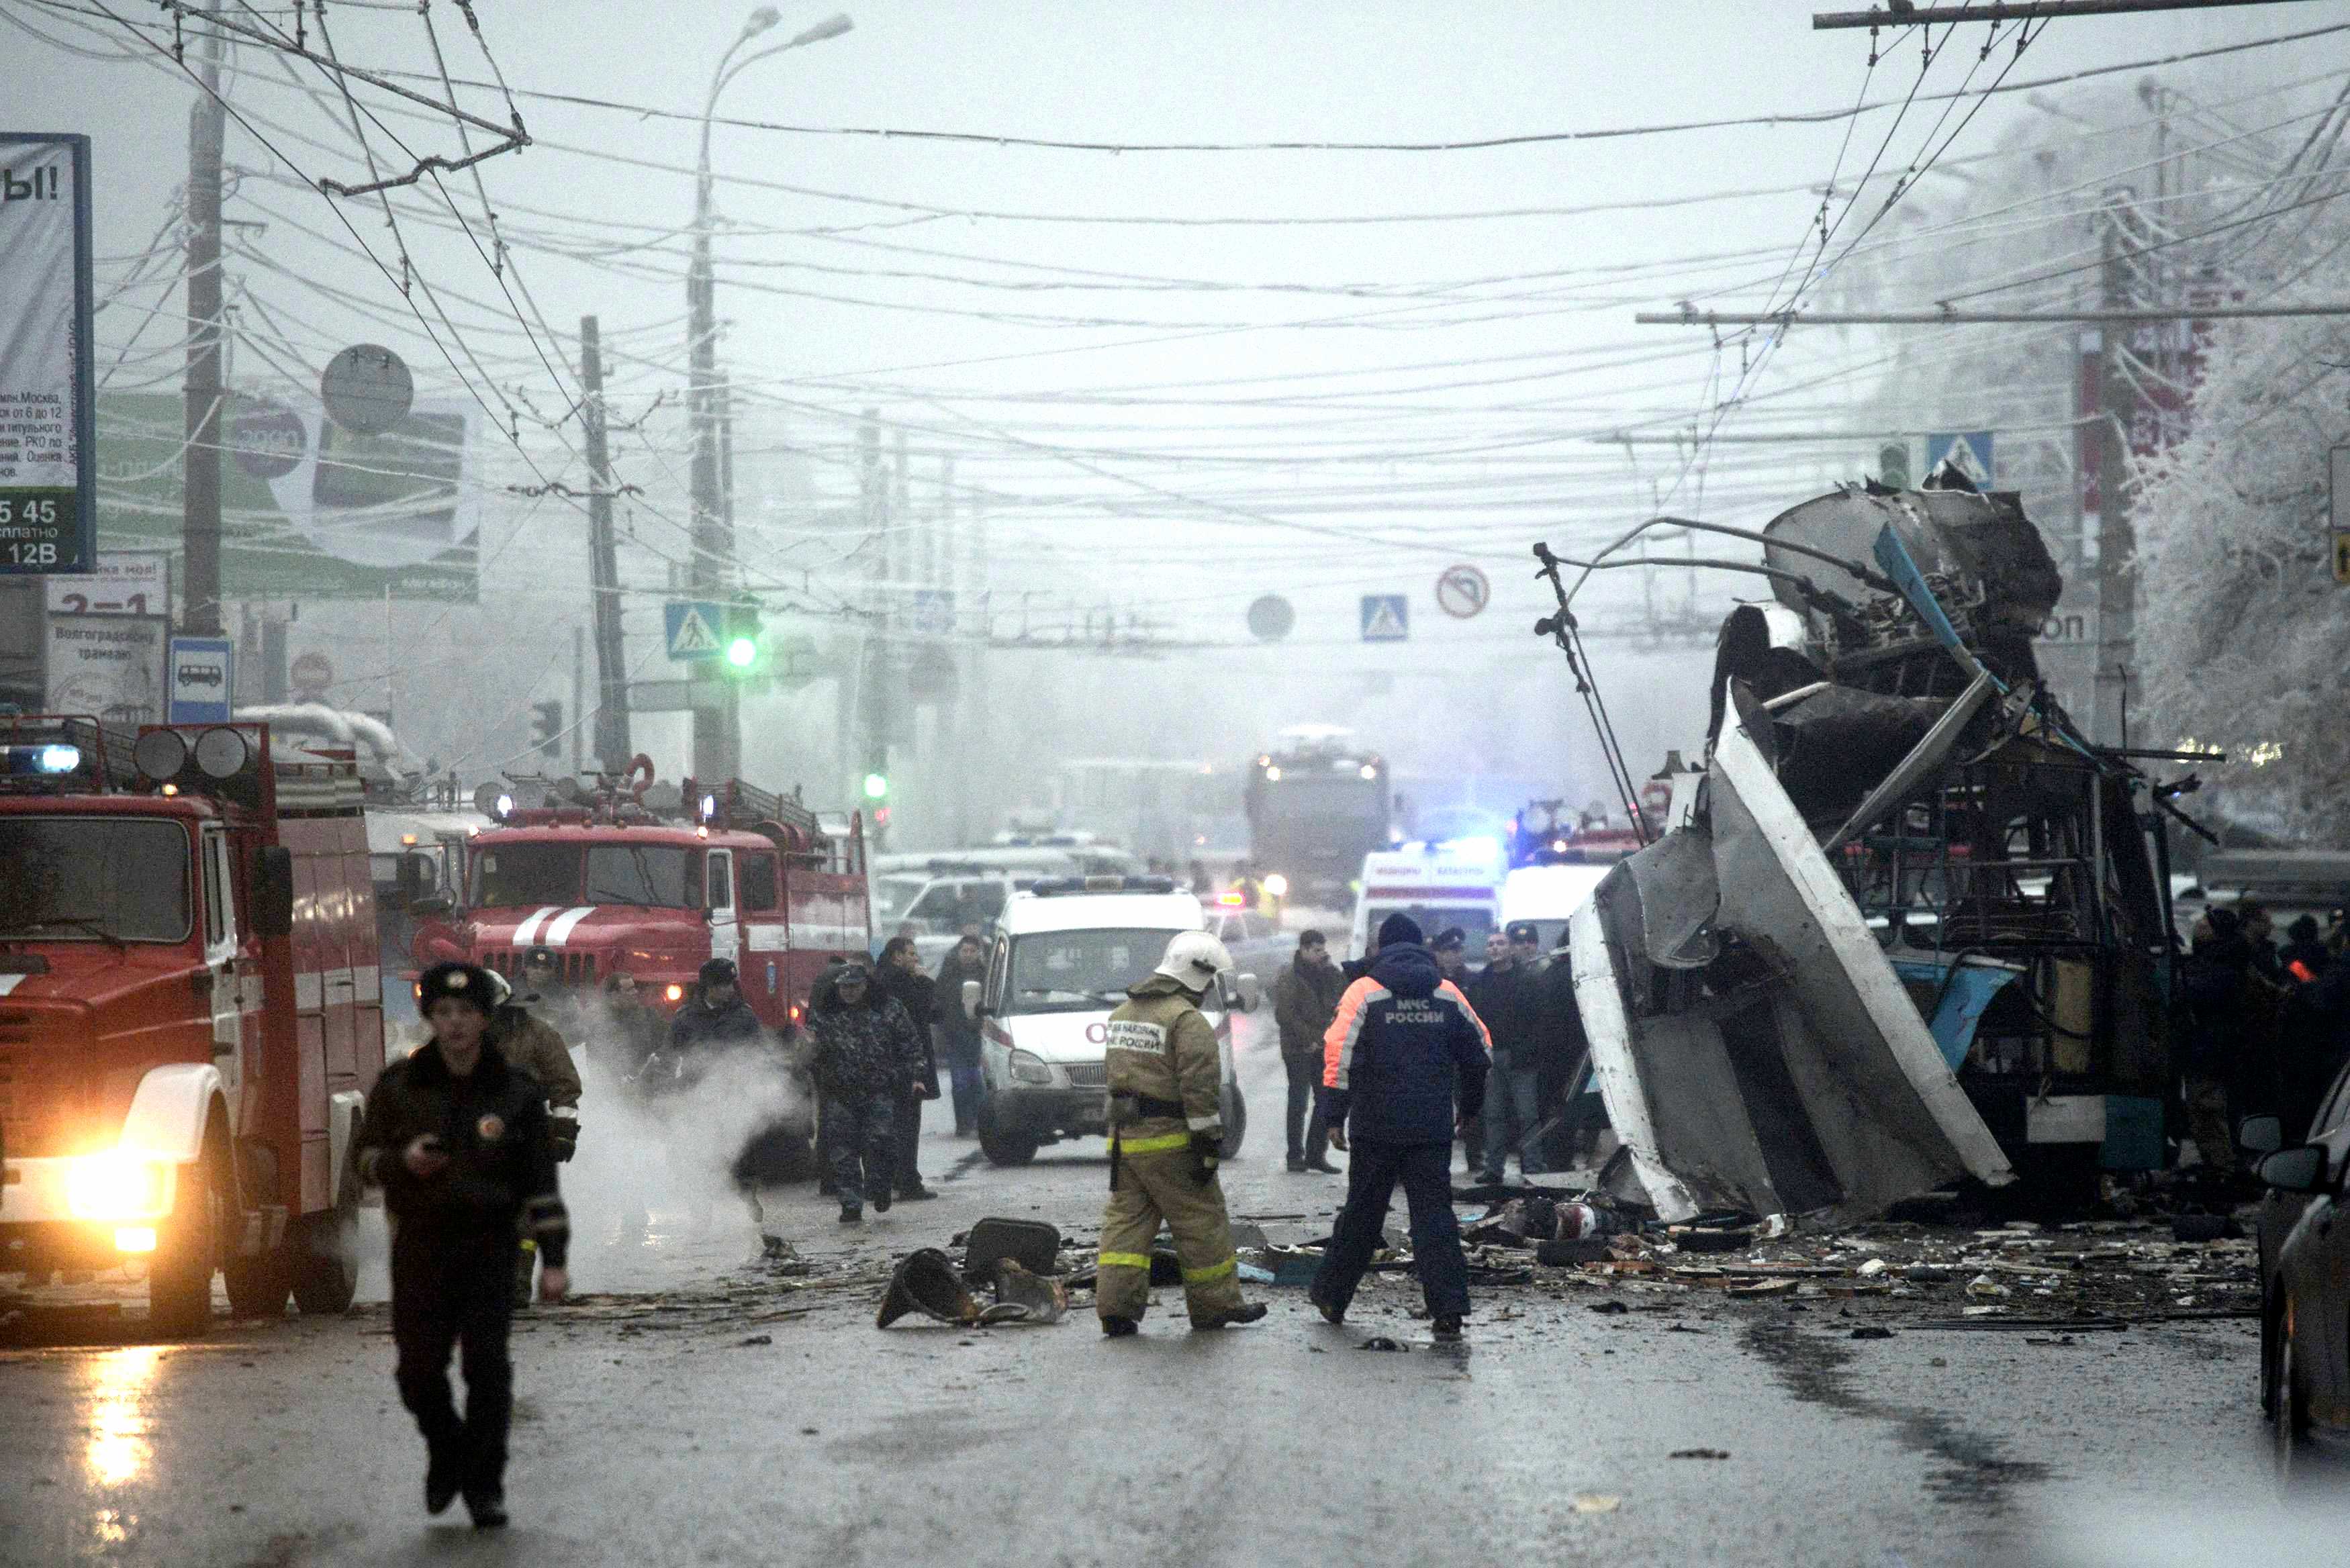 21 декабря 2005. Теракт в троллейбусе в Волгограде 30 декабря. Взрыв троллейбуса в Волгограде. Взрыв троллейбуса в Волгограде 30 декабря 2013.